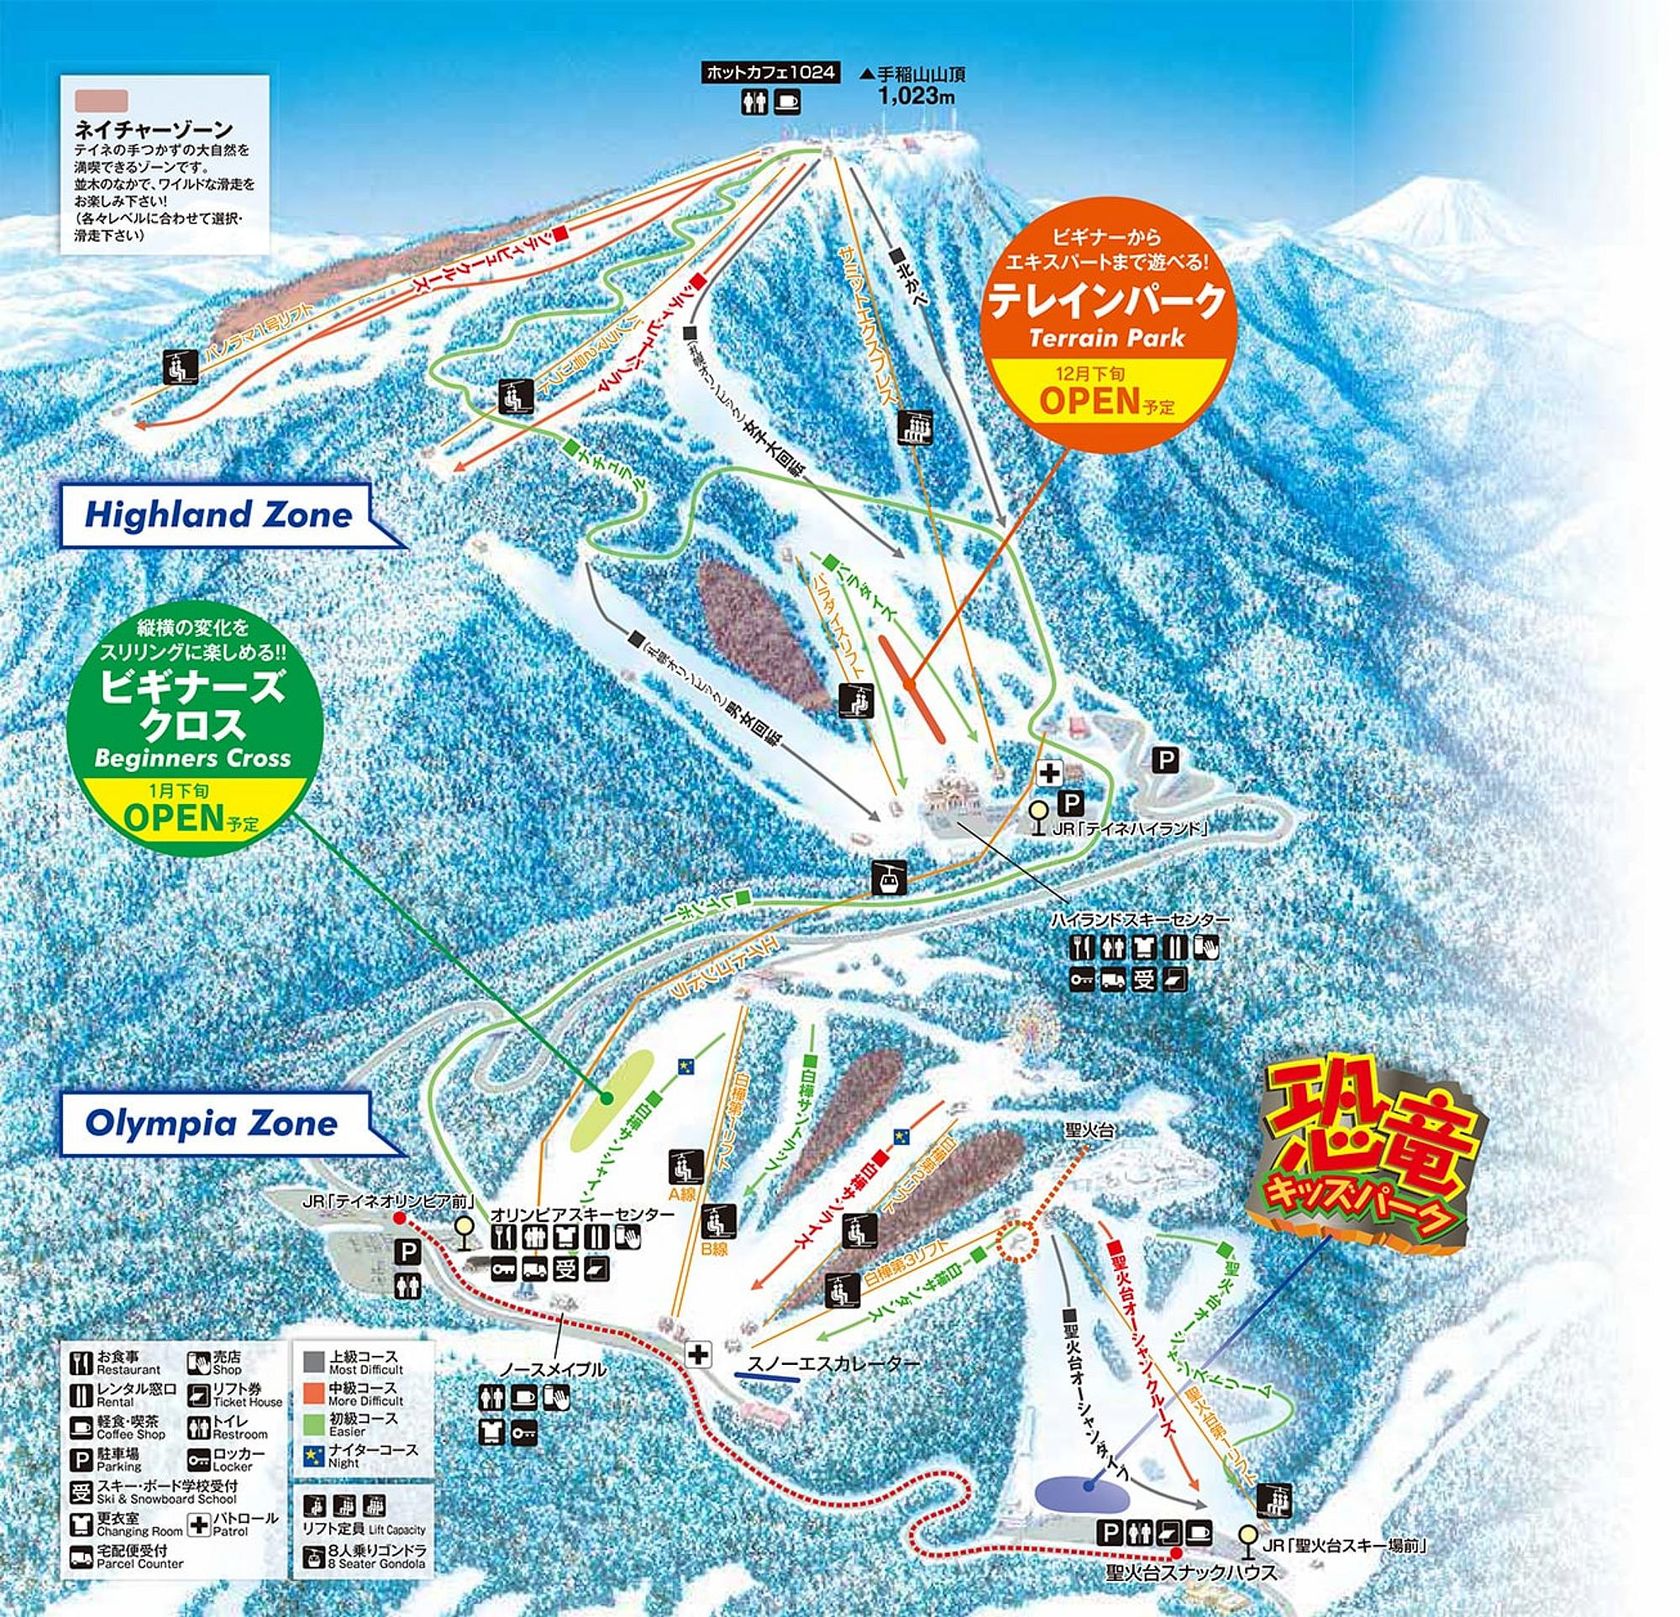 21 サッポロテイネ 格安スキーツアー スノーボードツアー 大阪発 格安旅行のジェイトリップ